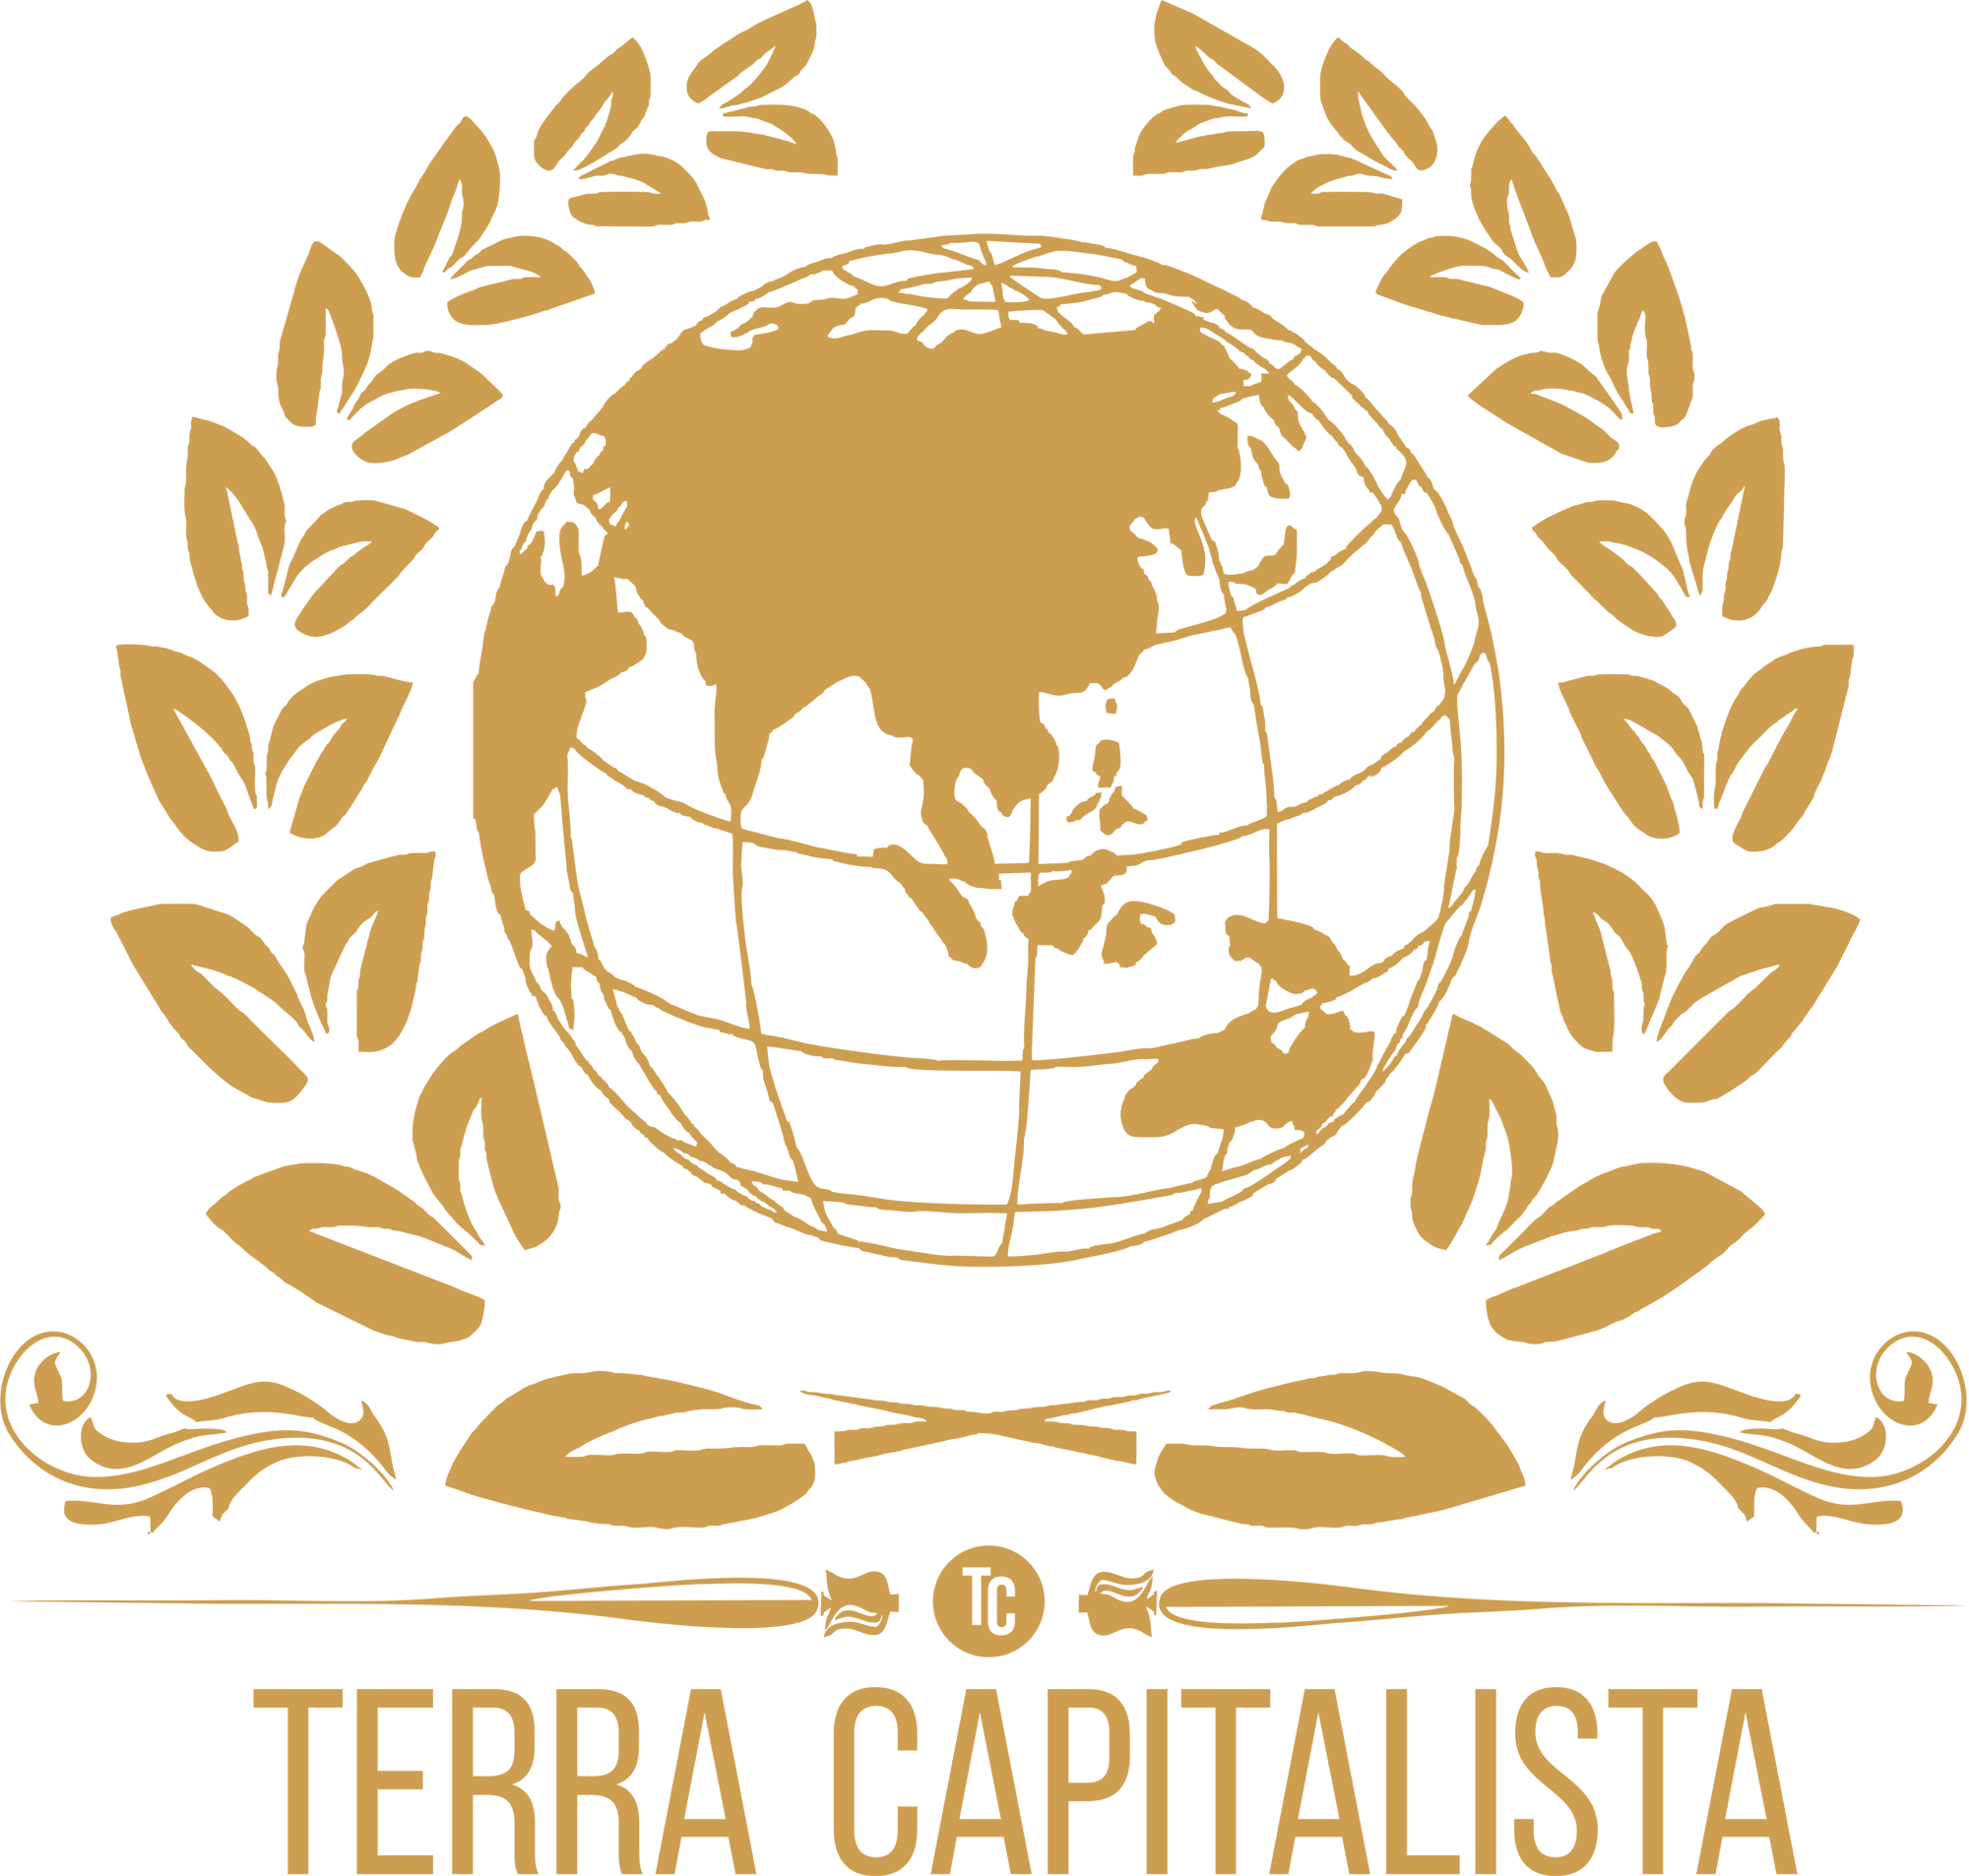 Terra Capitalista